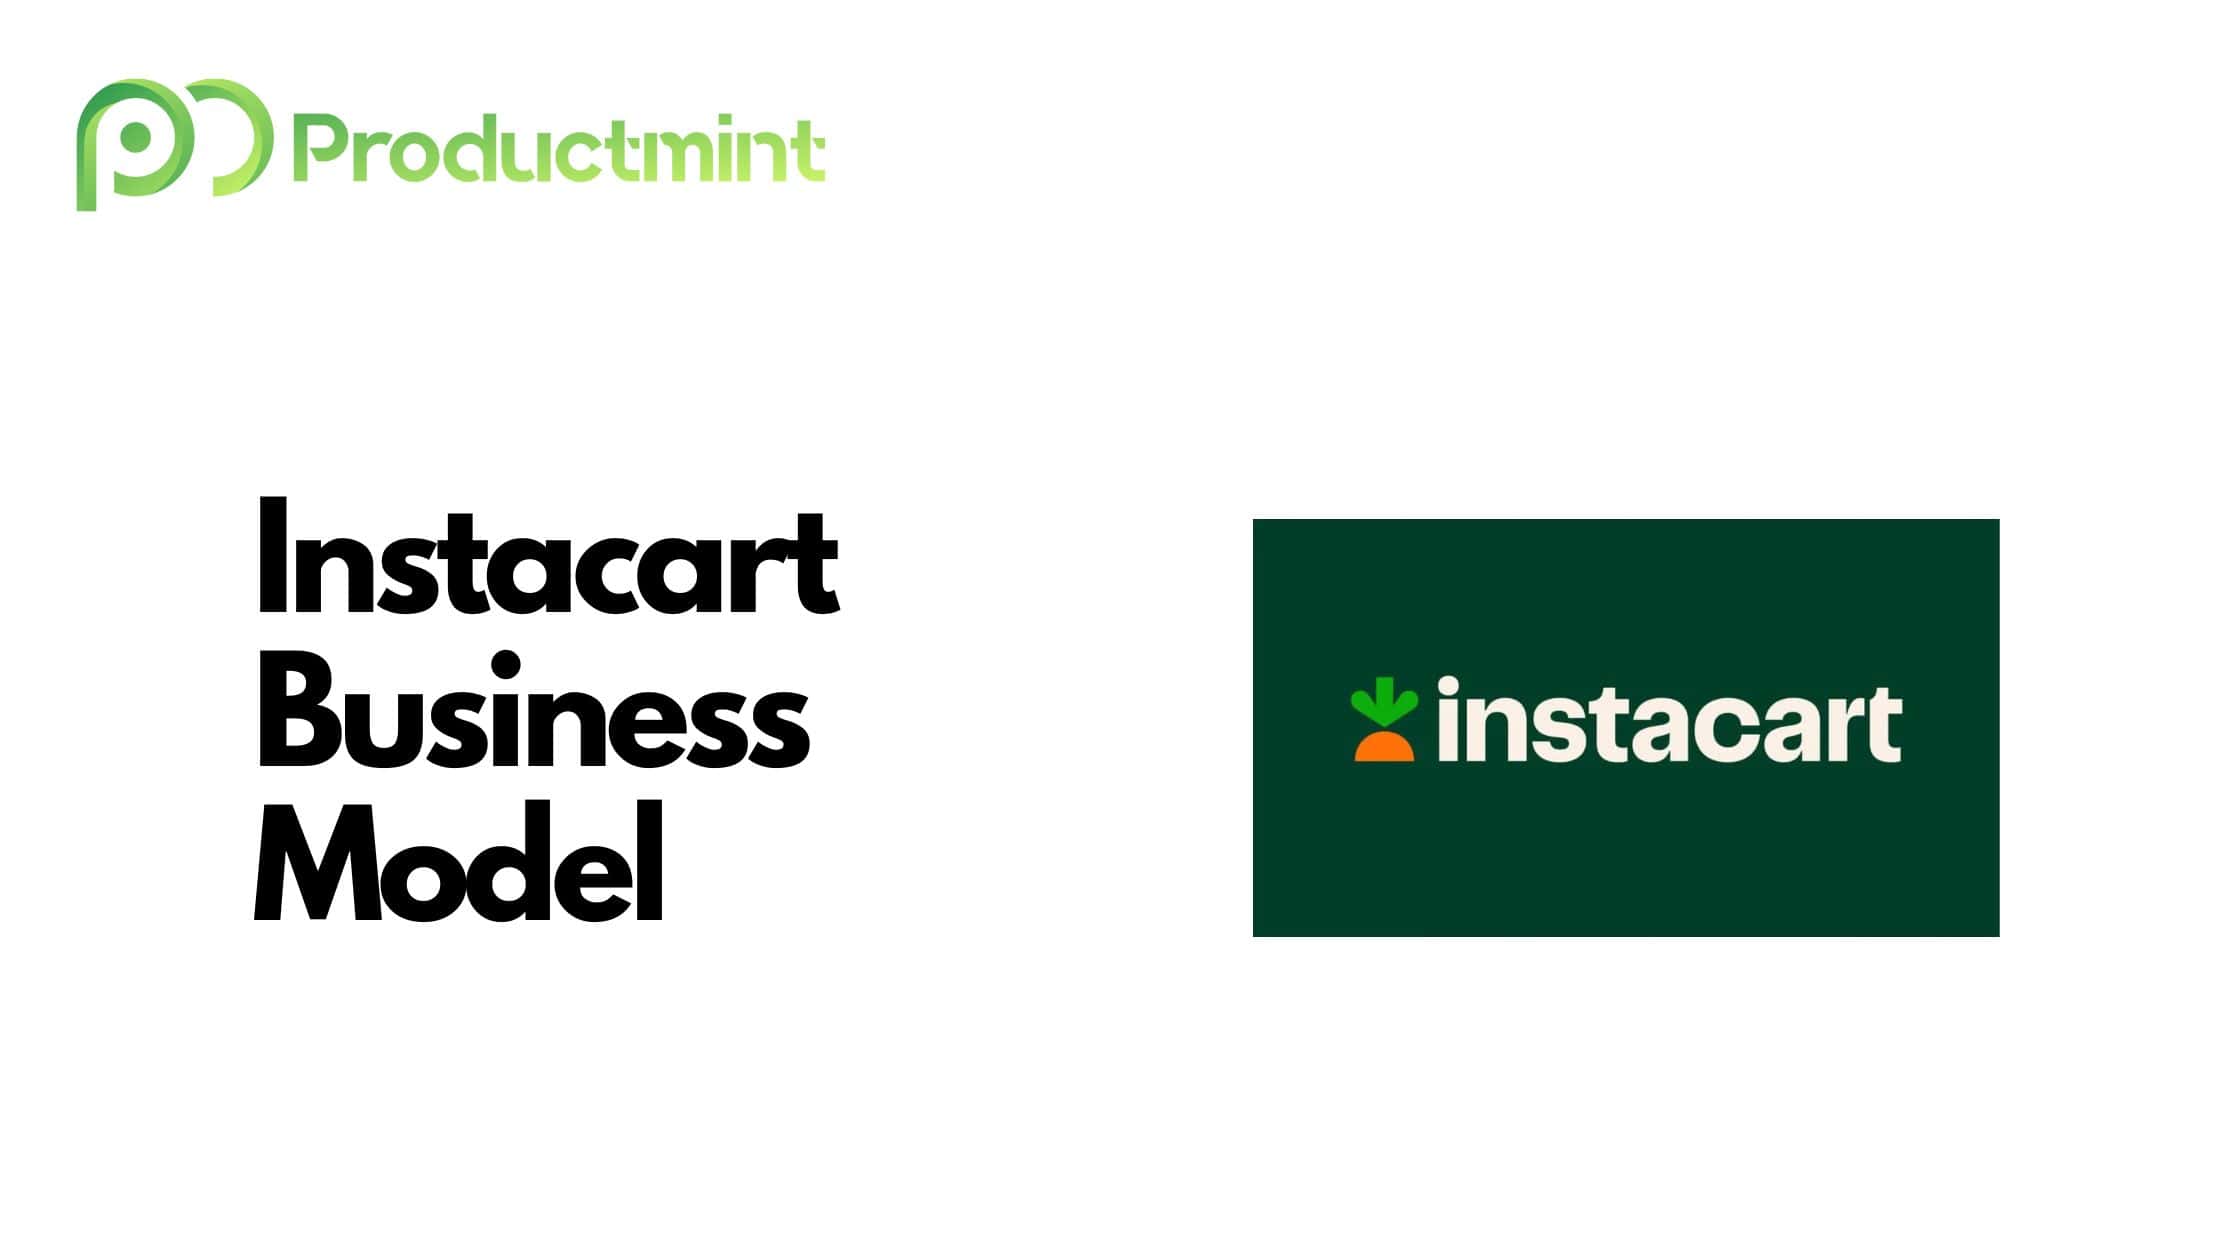 Instacart Business Model